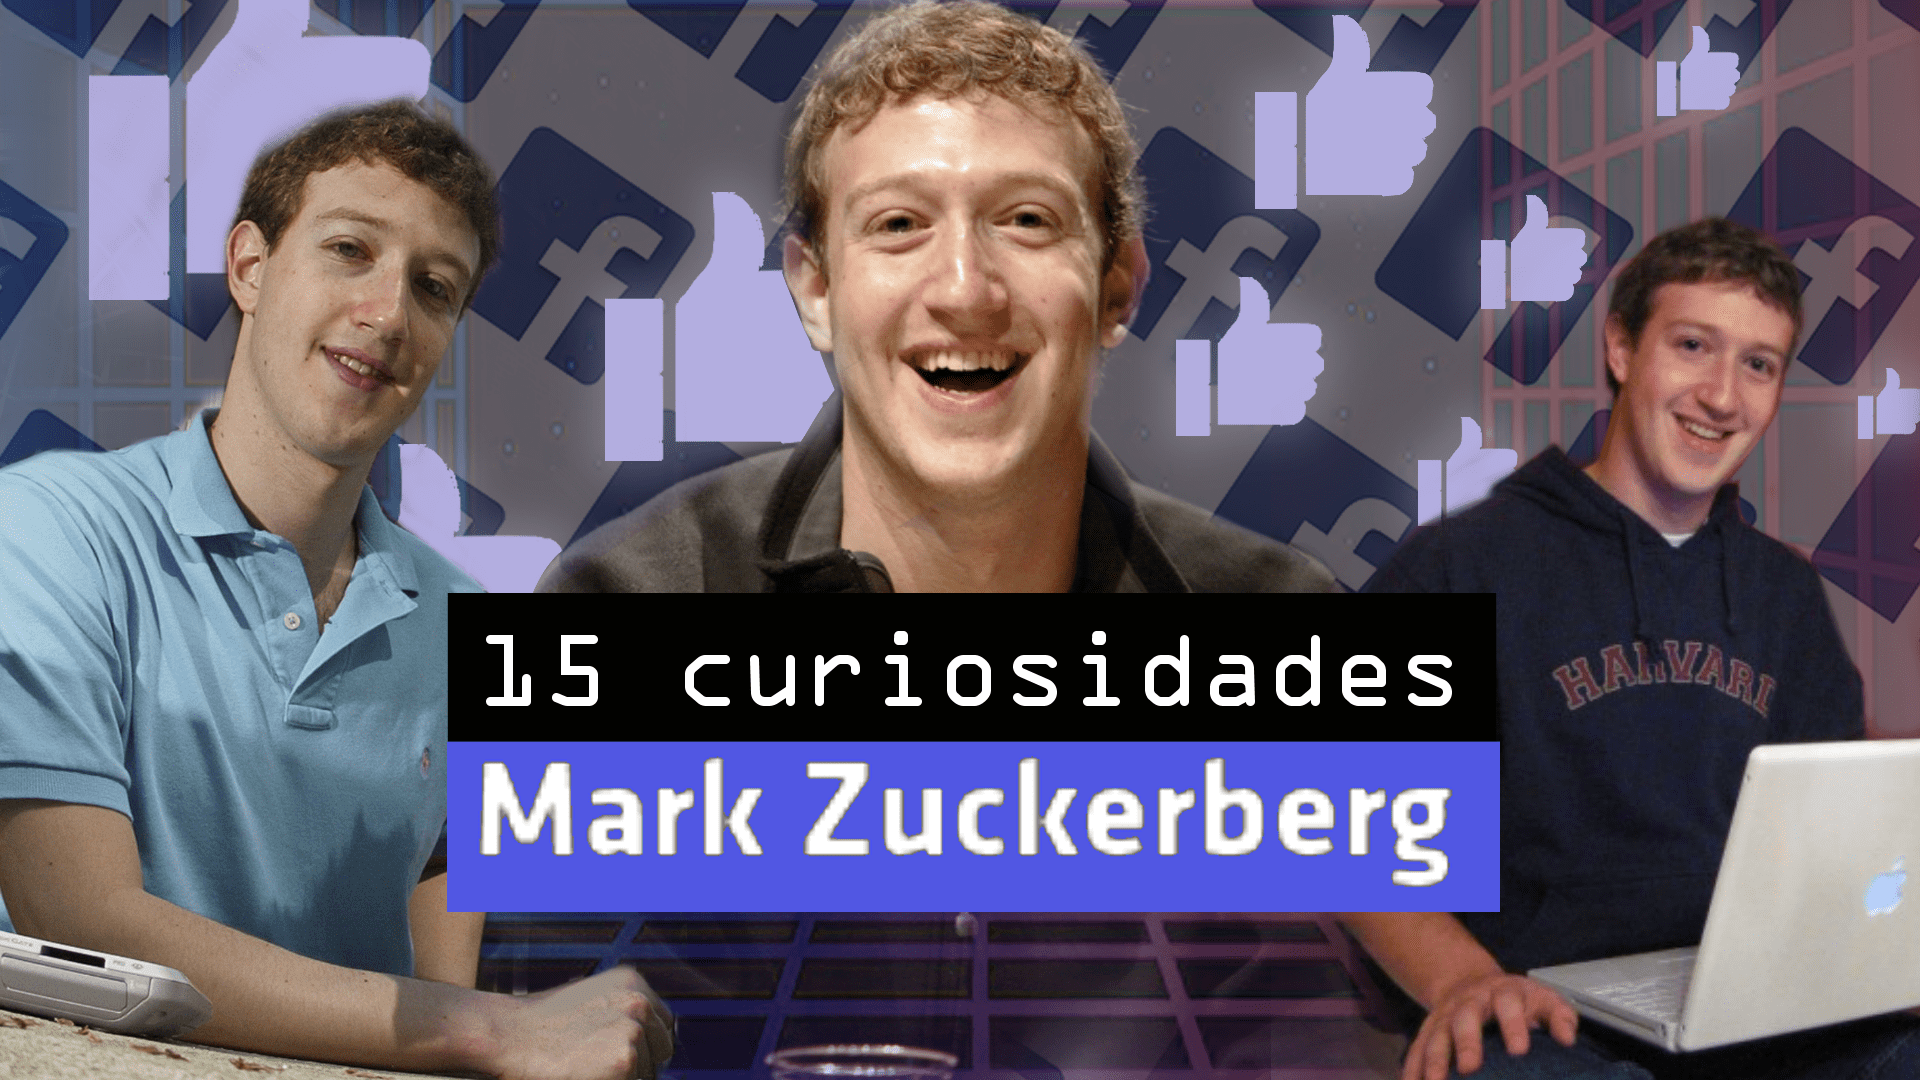 15 curiosidades sobre Mark Zuckerberg